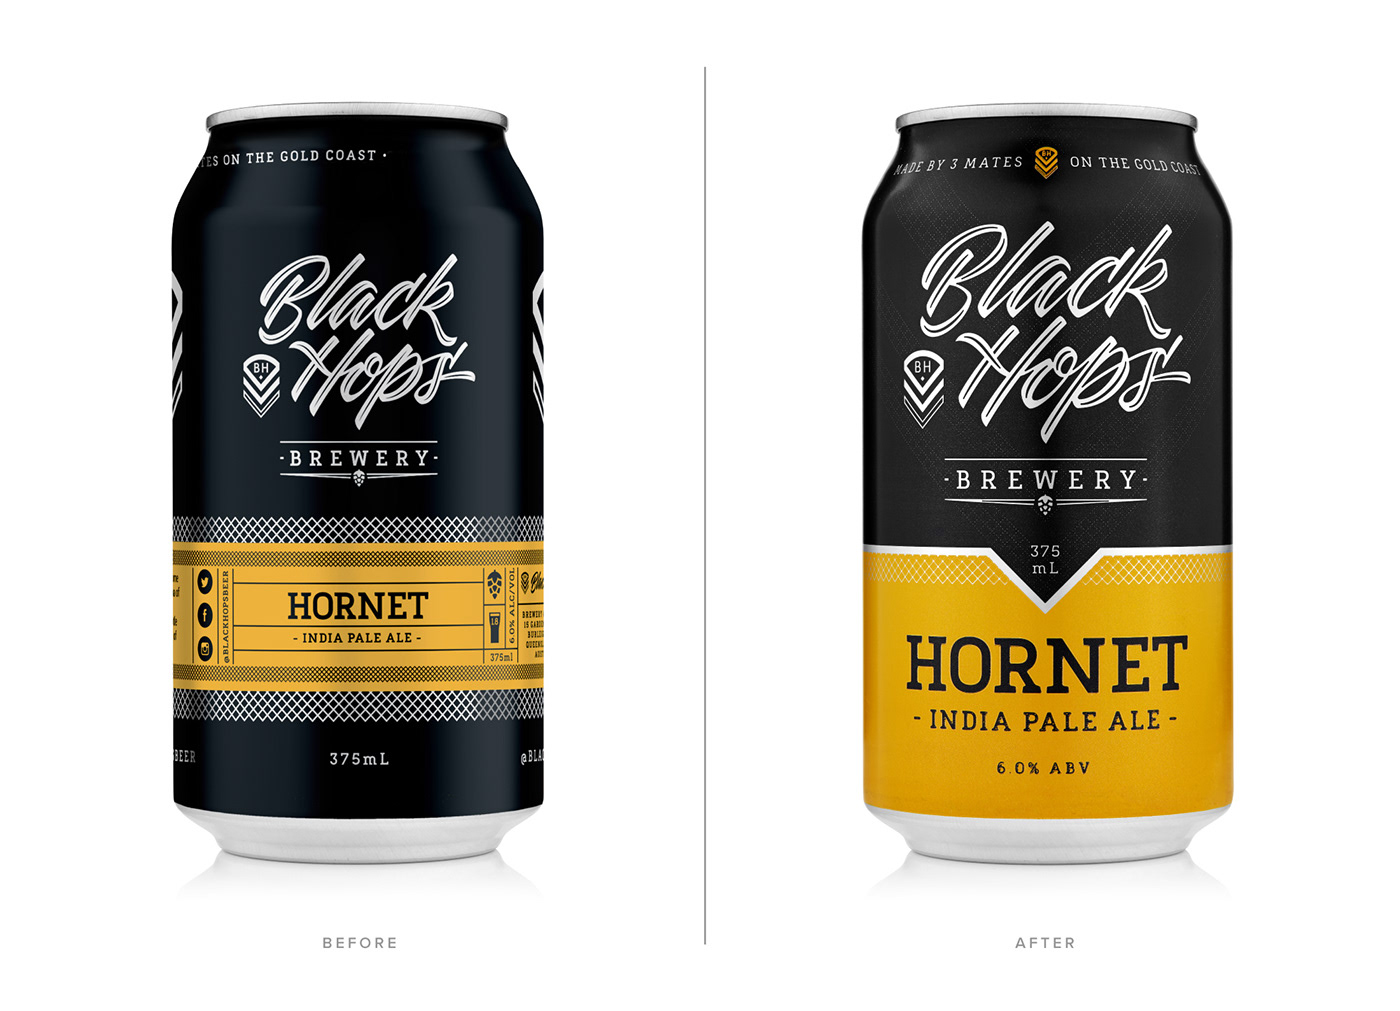 Australia beer beer can Beer Packaging black hops brewery Dan Kuhlken DKNG Nathan Goldman Packaging